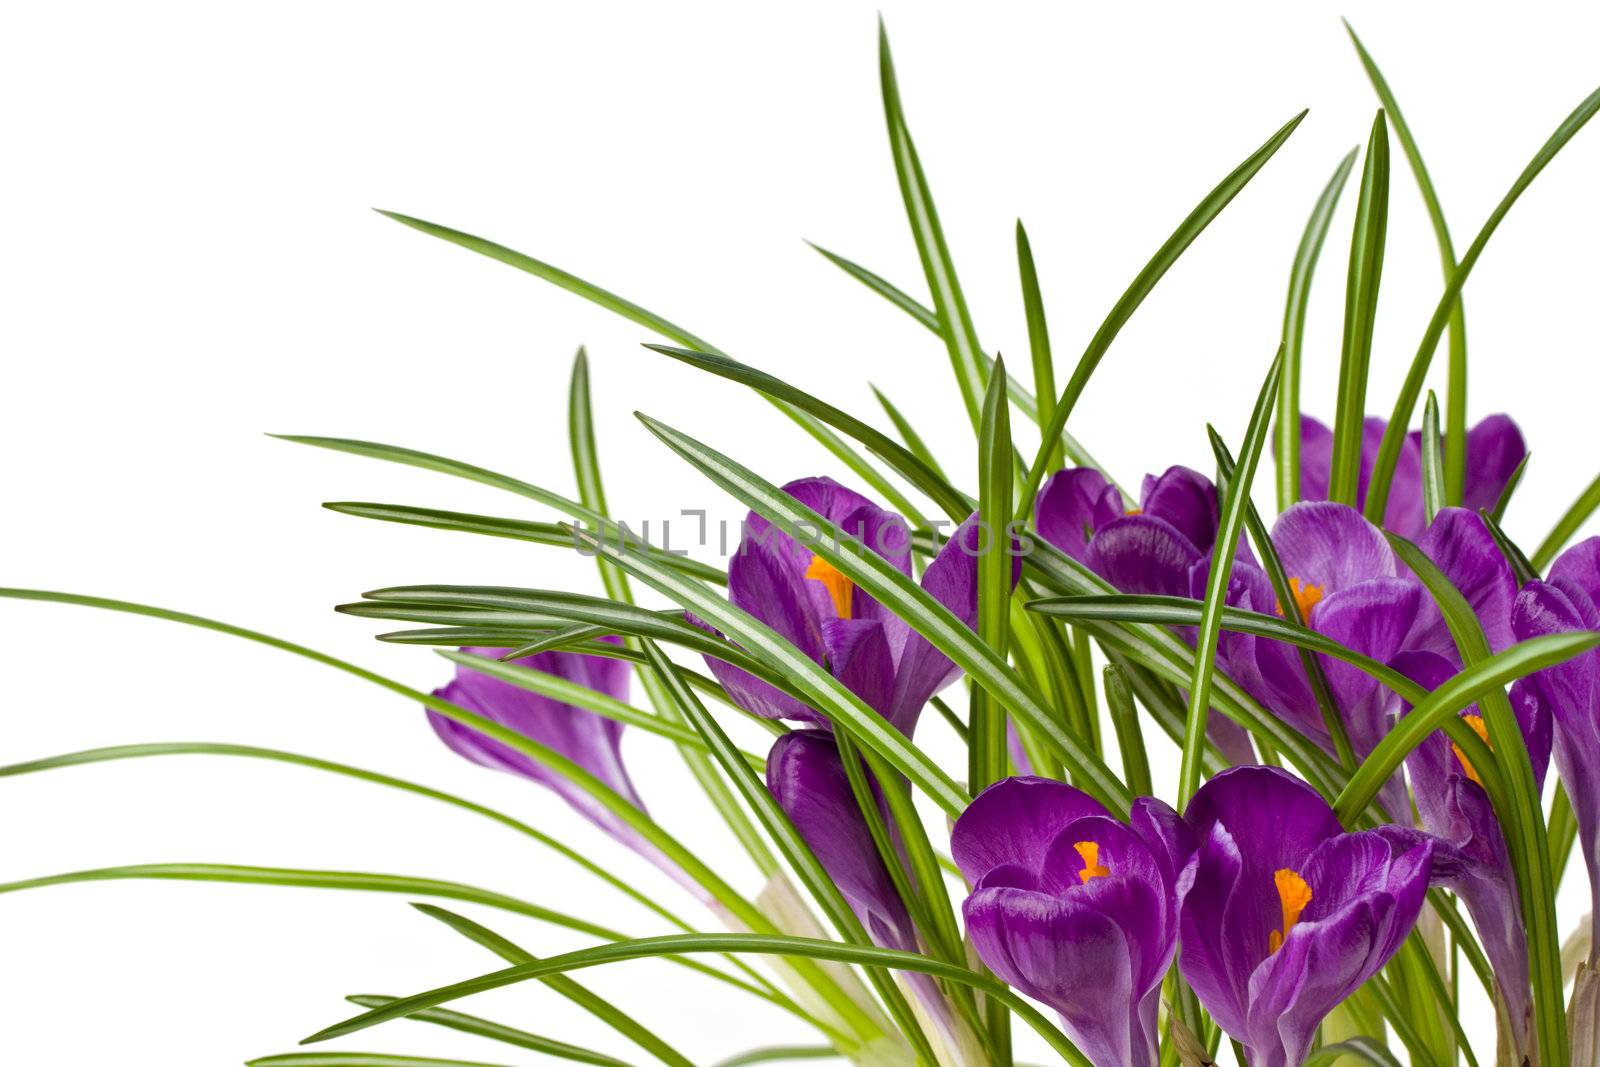 detail of purple crocus flowers by bernjuer